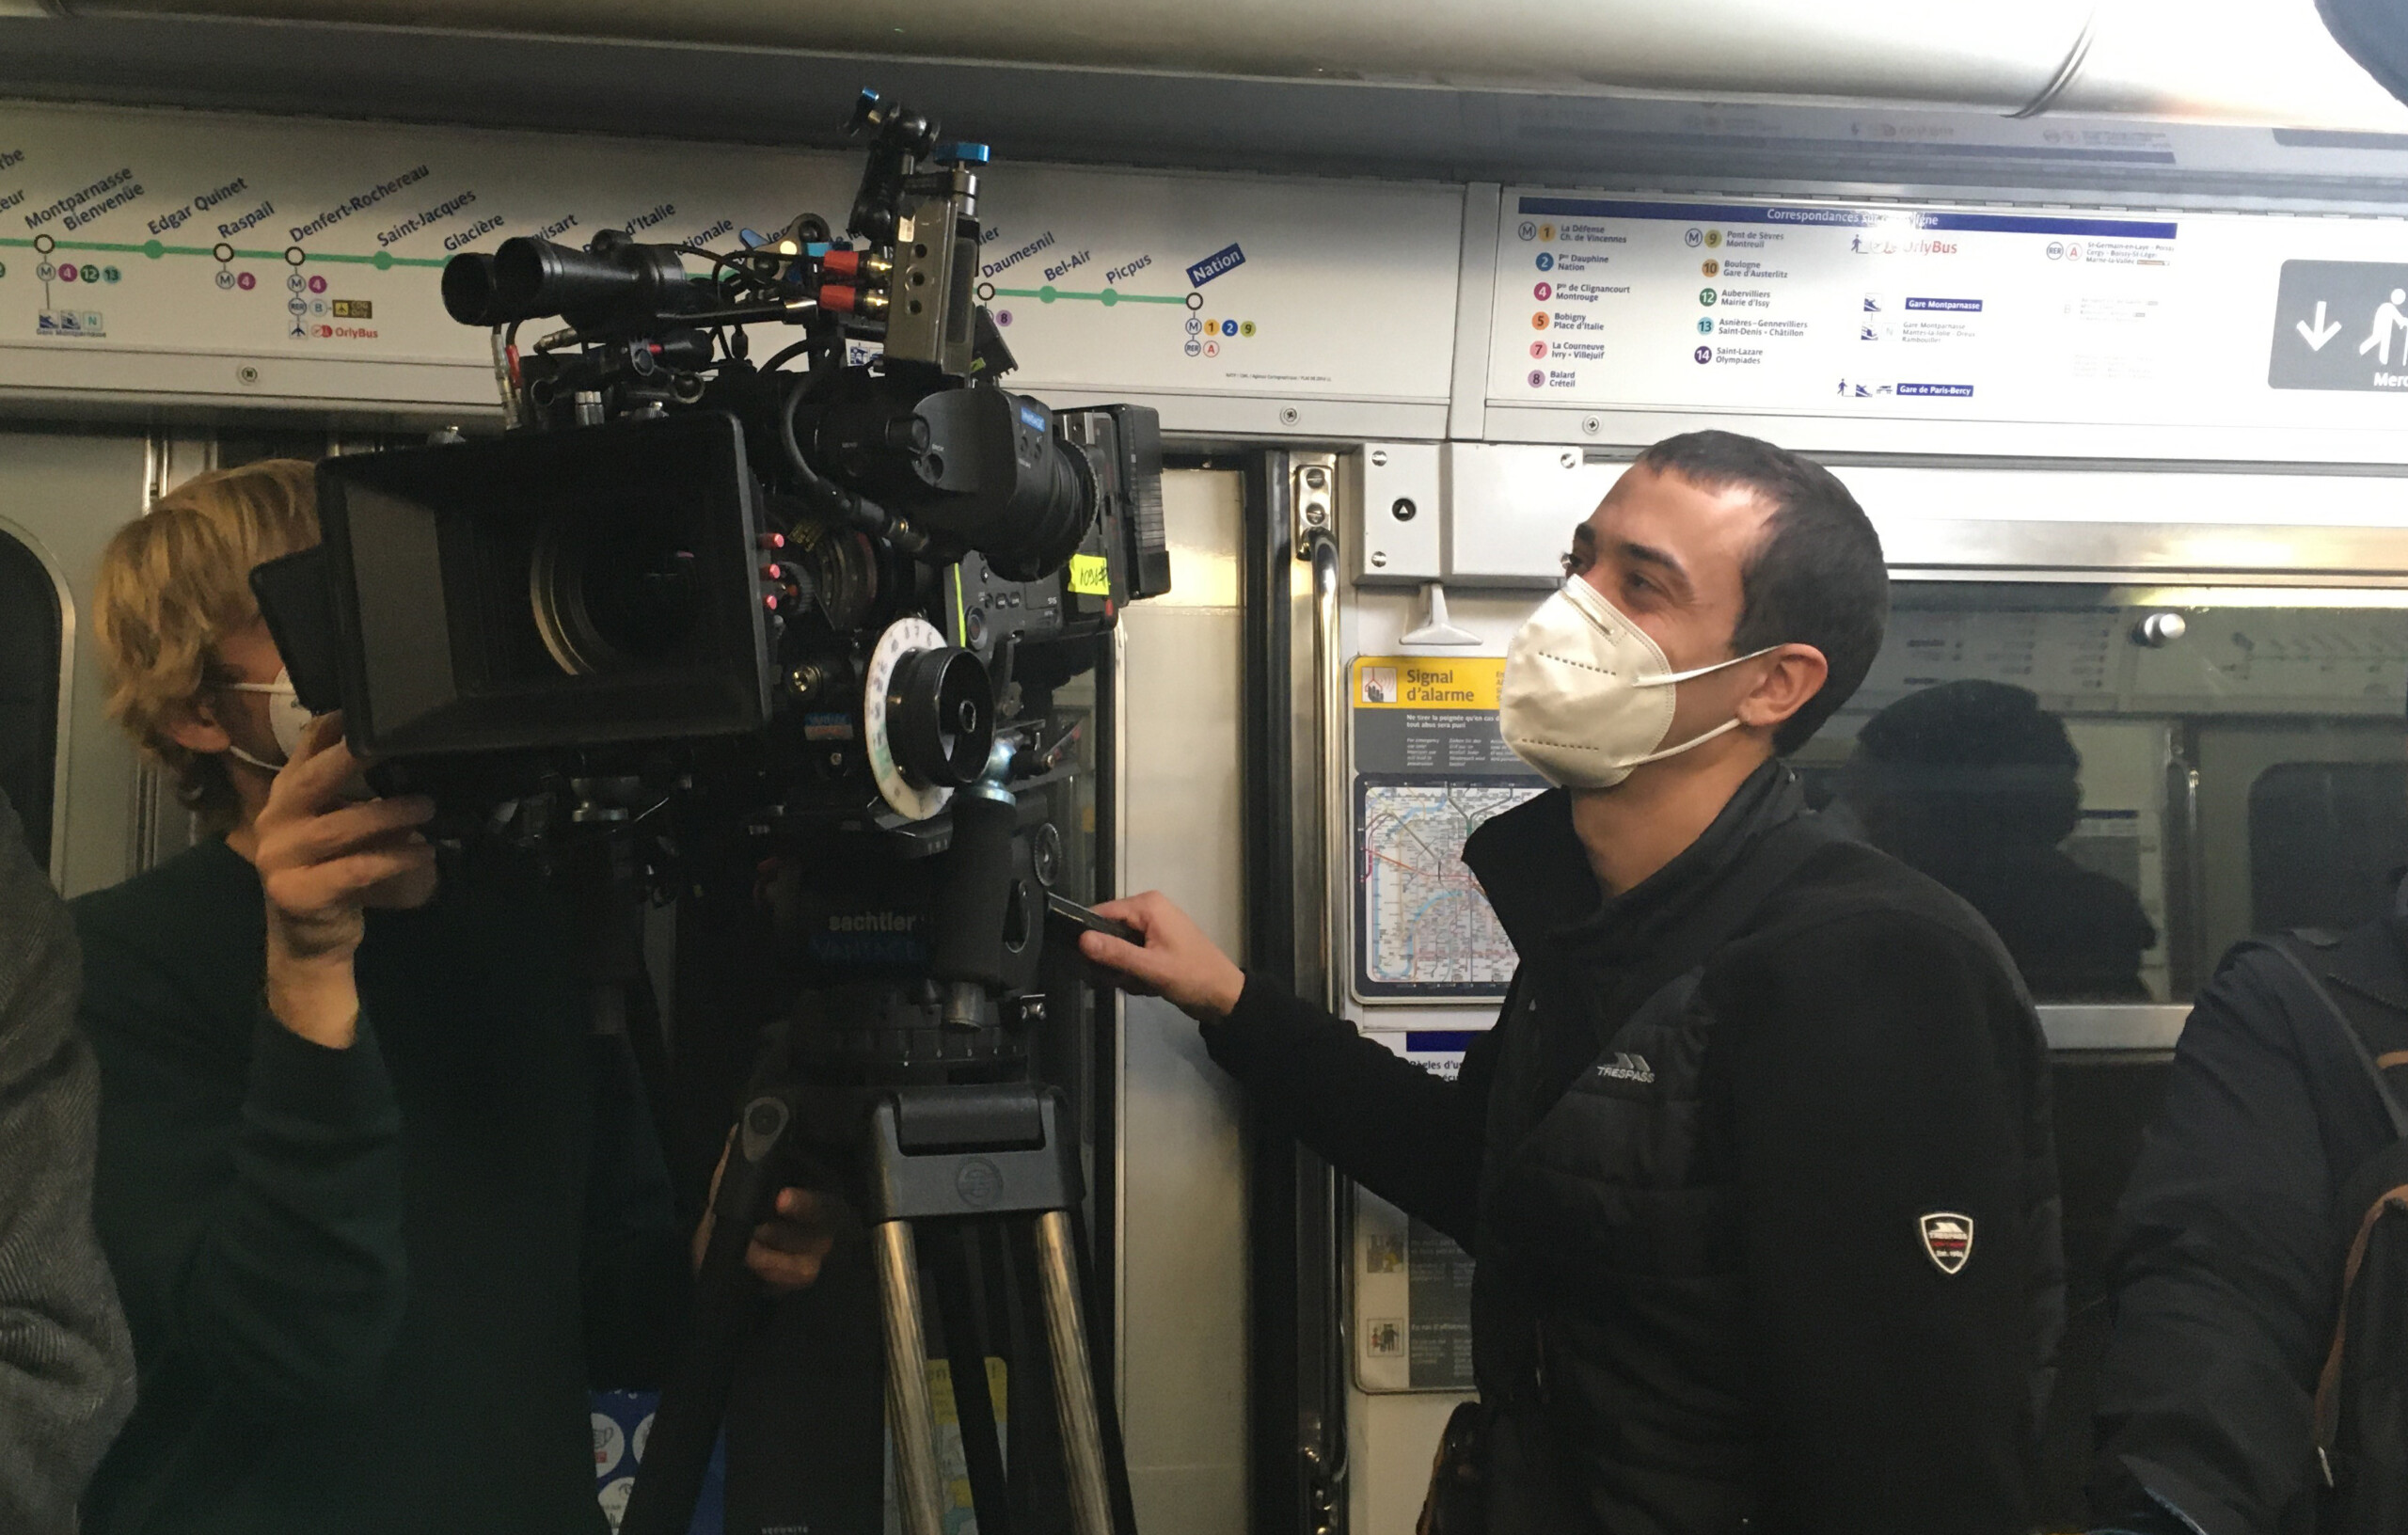 Visuel Les tournages cinéma continuent-ils sur le réseau malgré la crise sanitaire ?